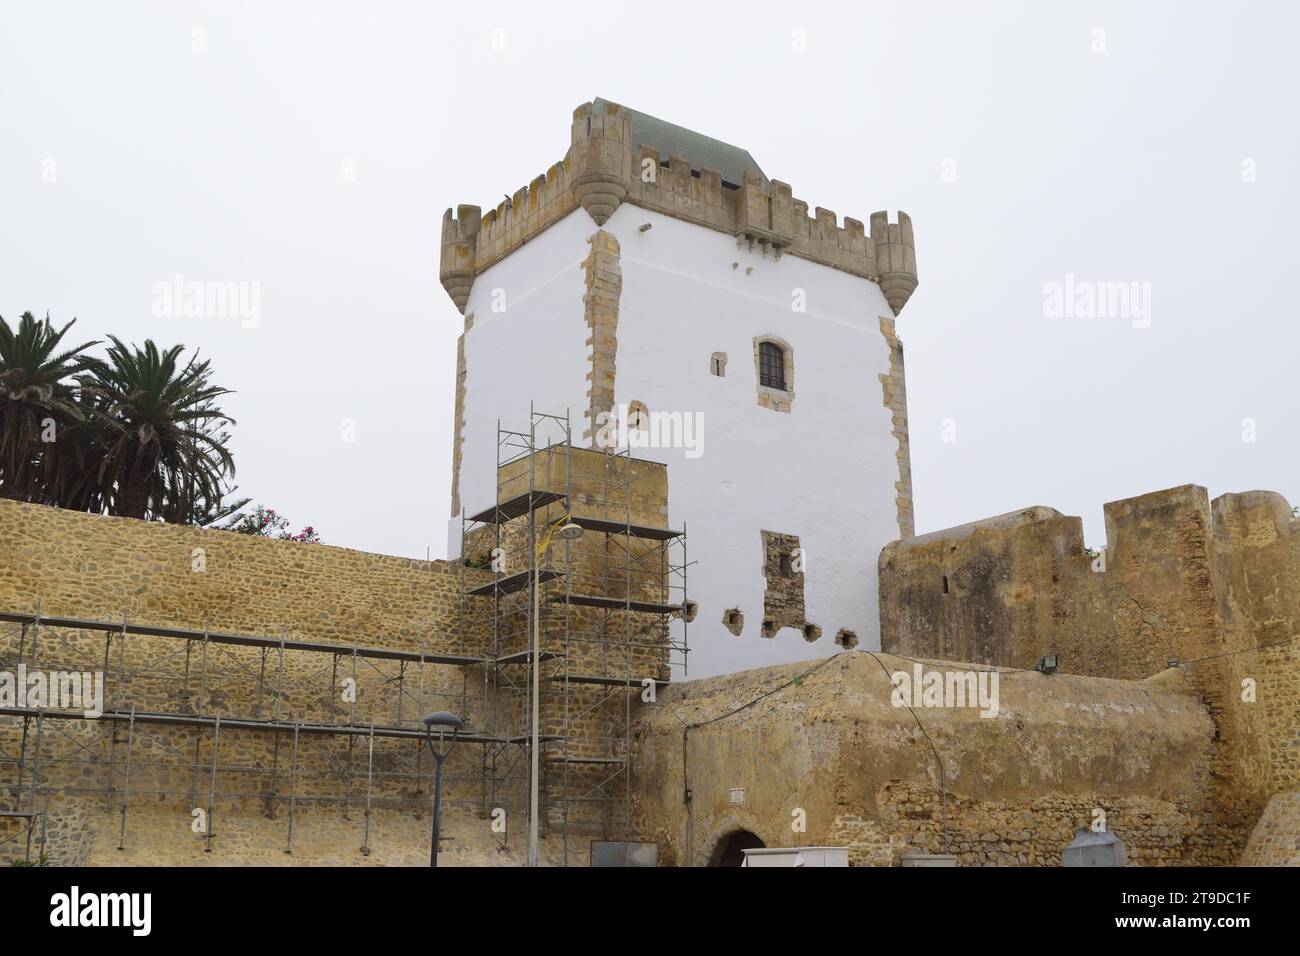 La foto non curata mostra impalcature per il rinnovo e la ristrutturazione di vecchi edifici storici, le mura della torre del castello Foto Stock